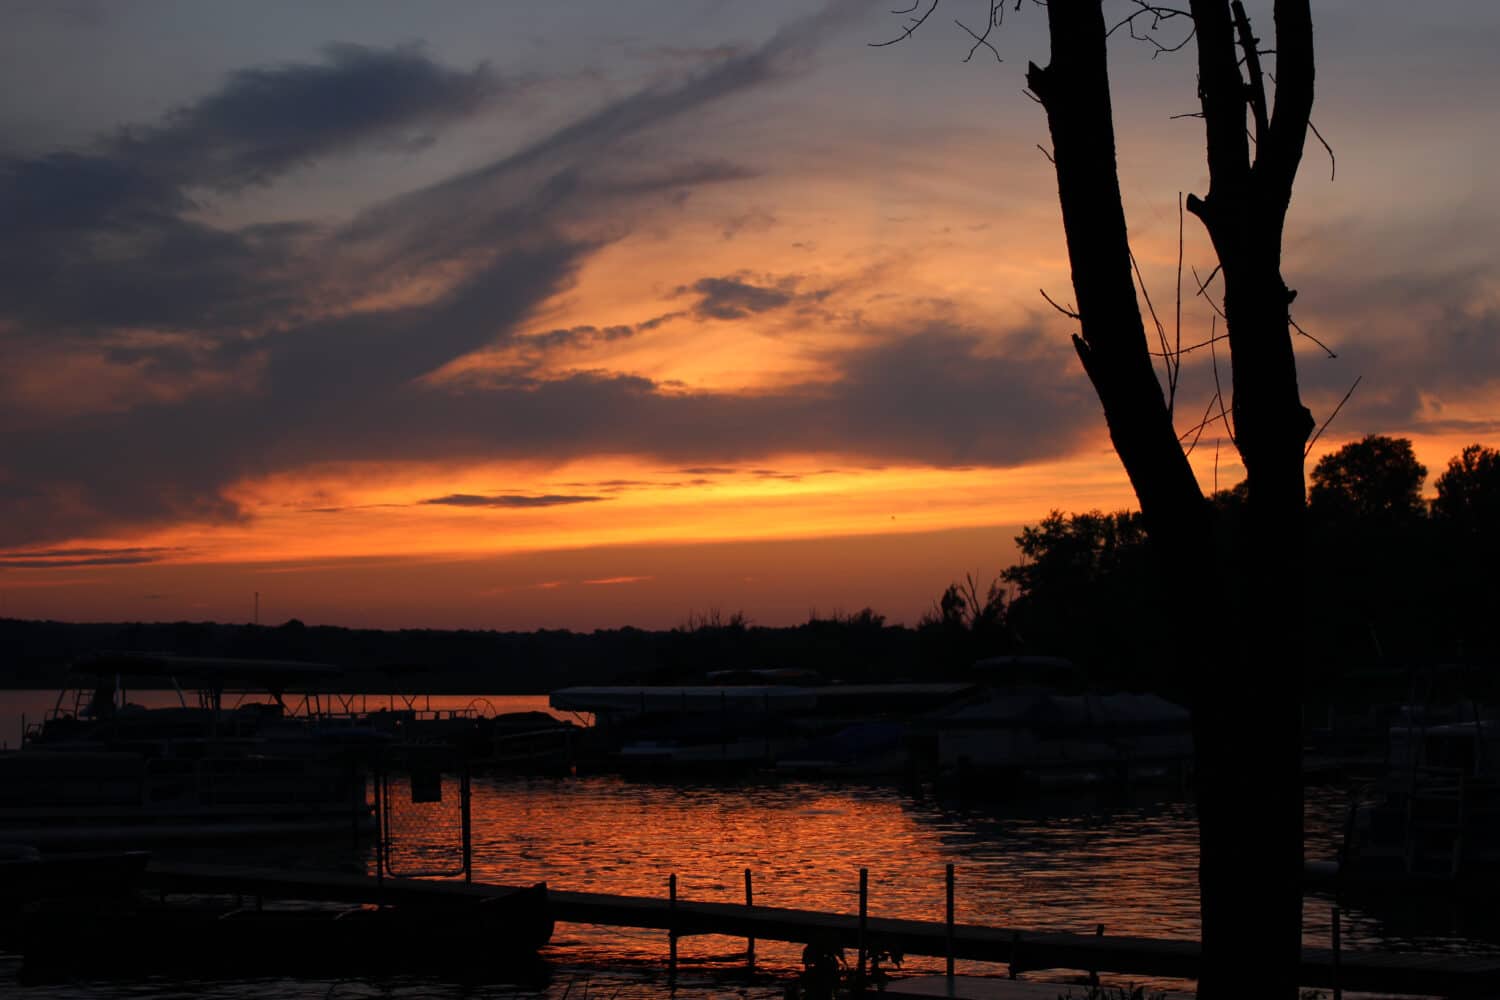 gorgeous sunset in chippewa lake ohio